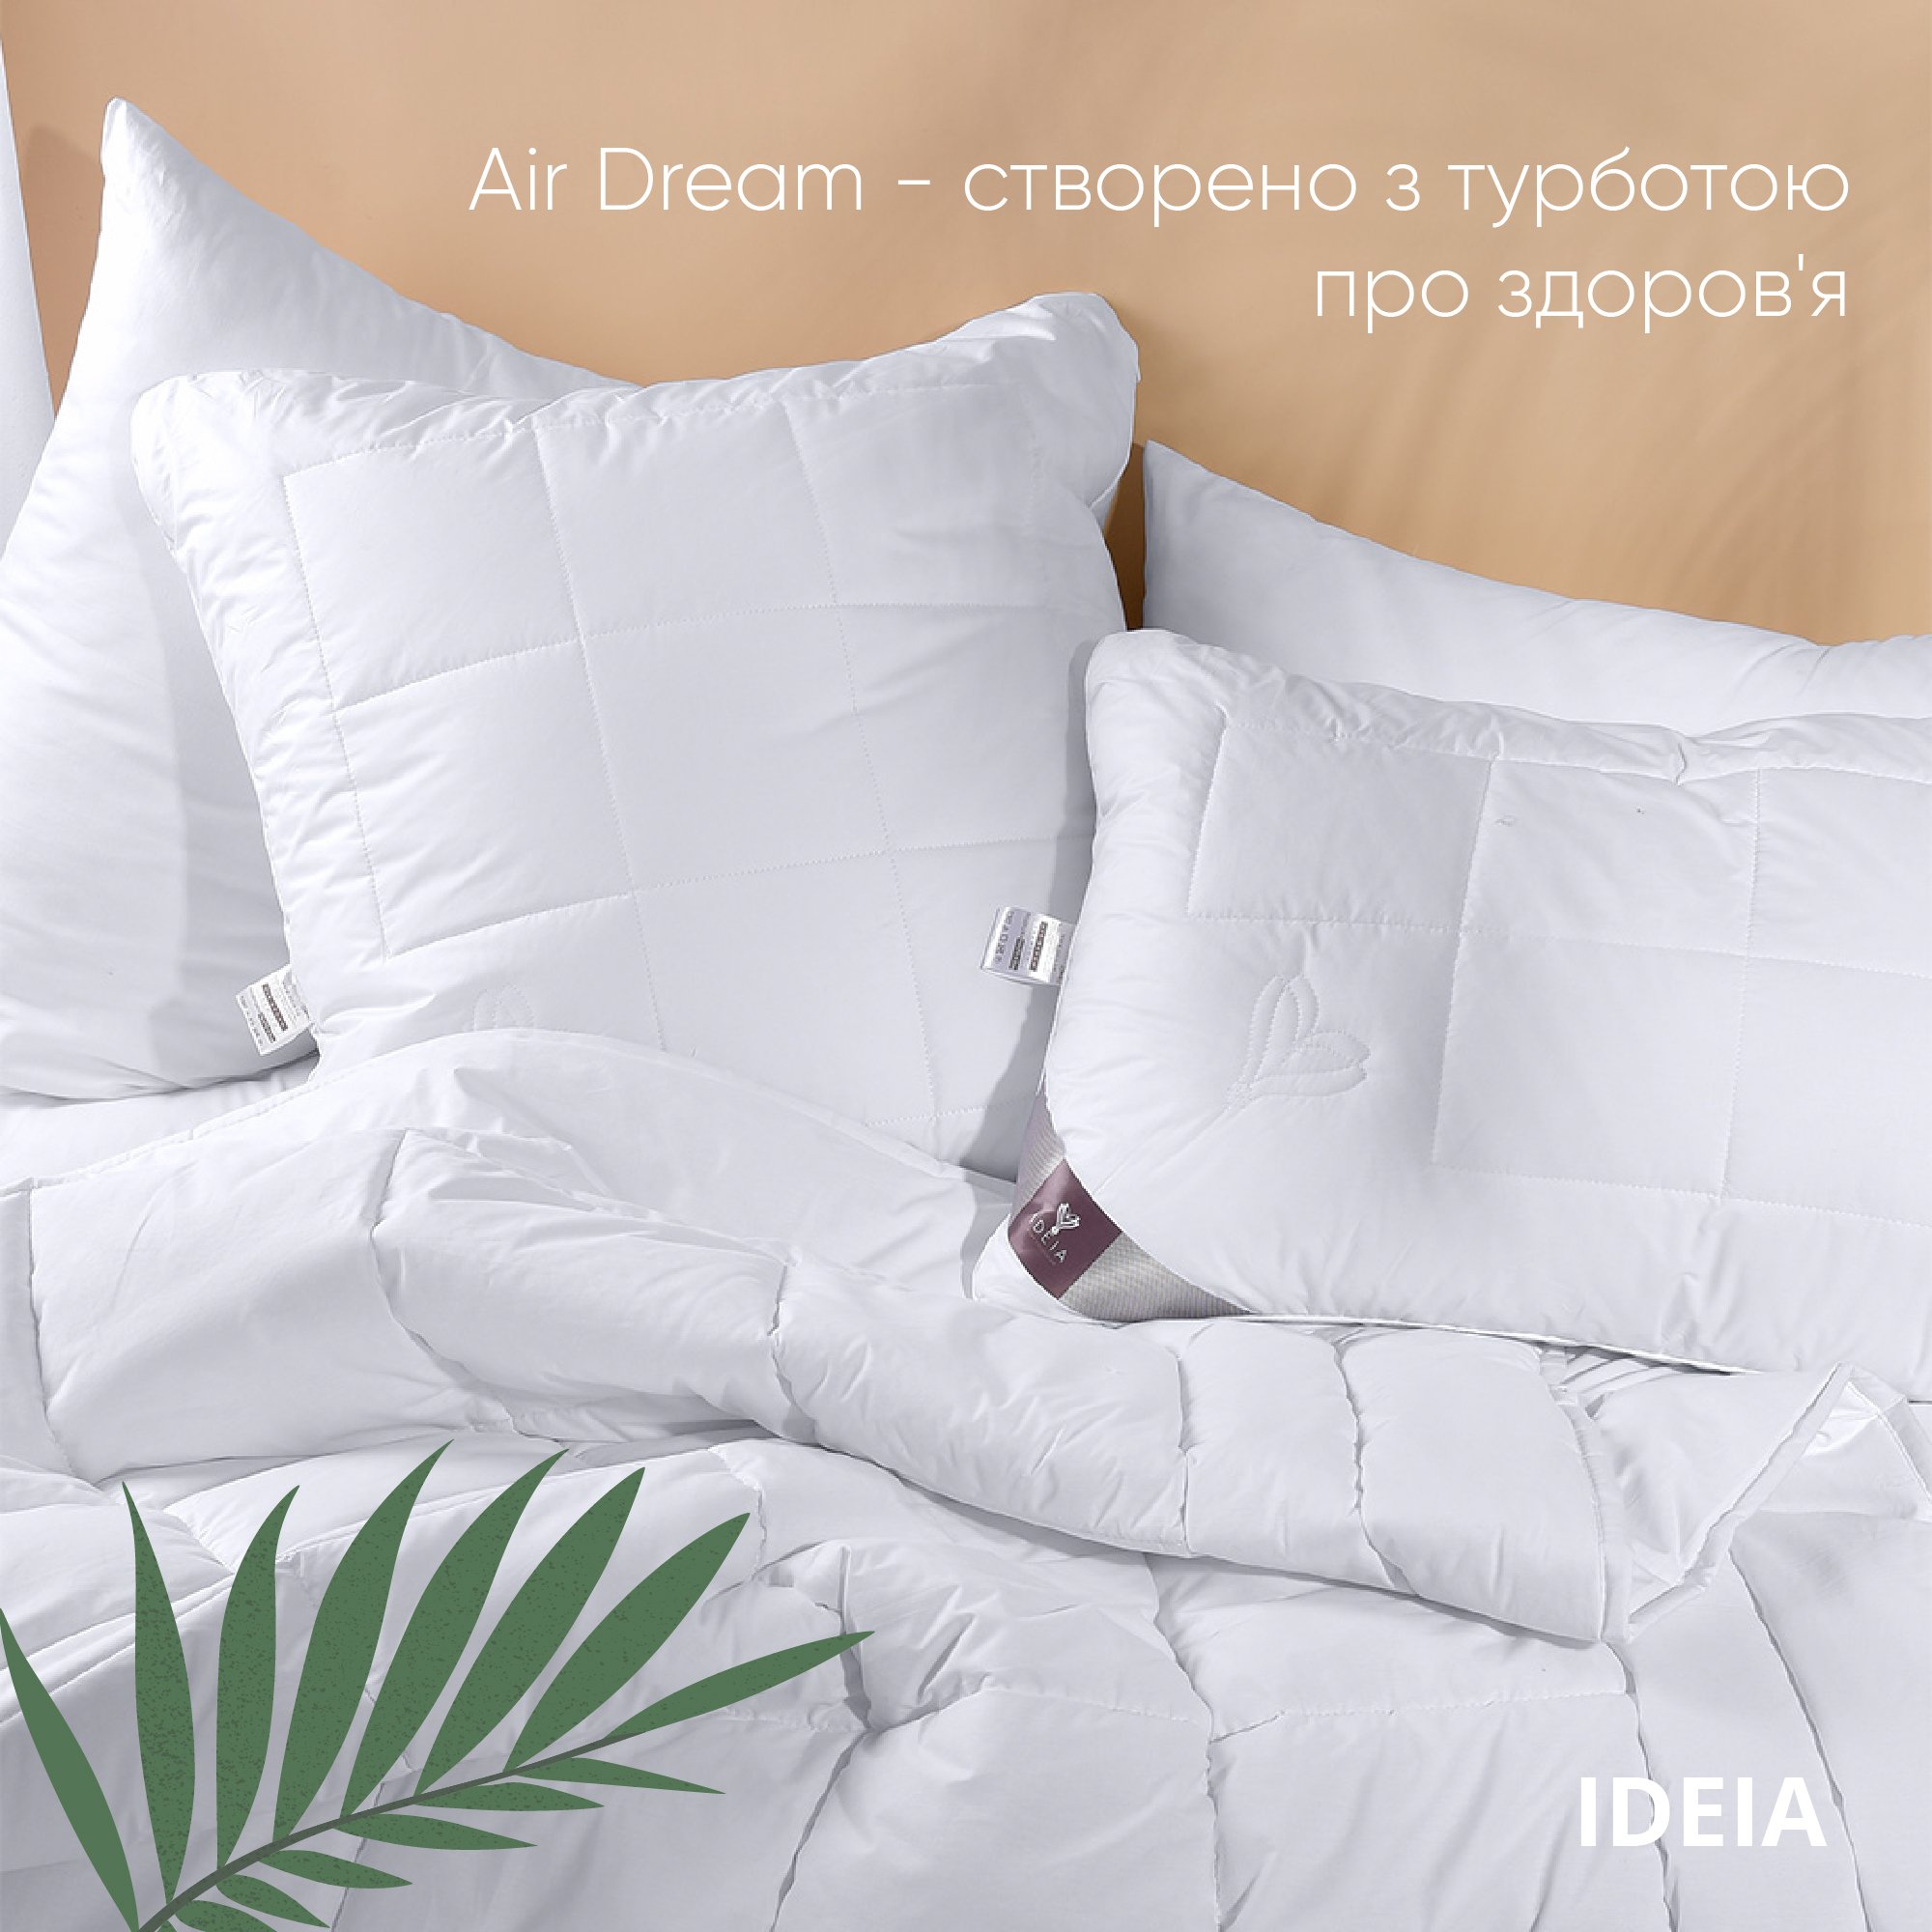 Одеяло Ideia Air Dream Premium летнее, 215х155, белый (8-11696) - фото 6